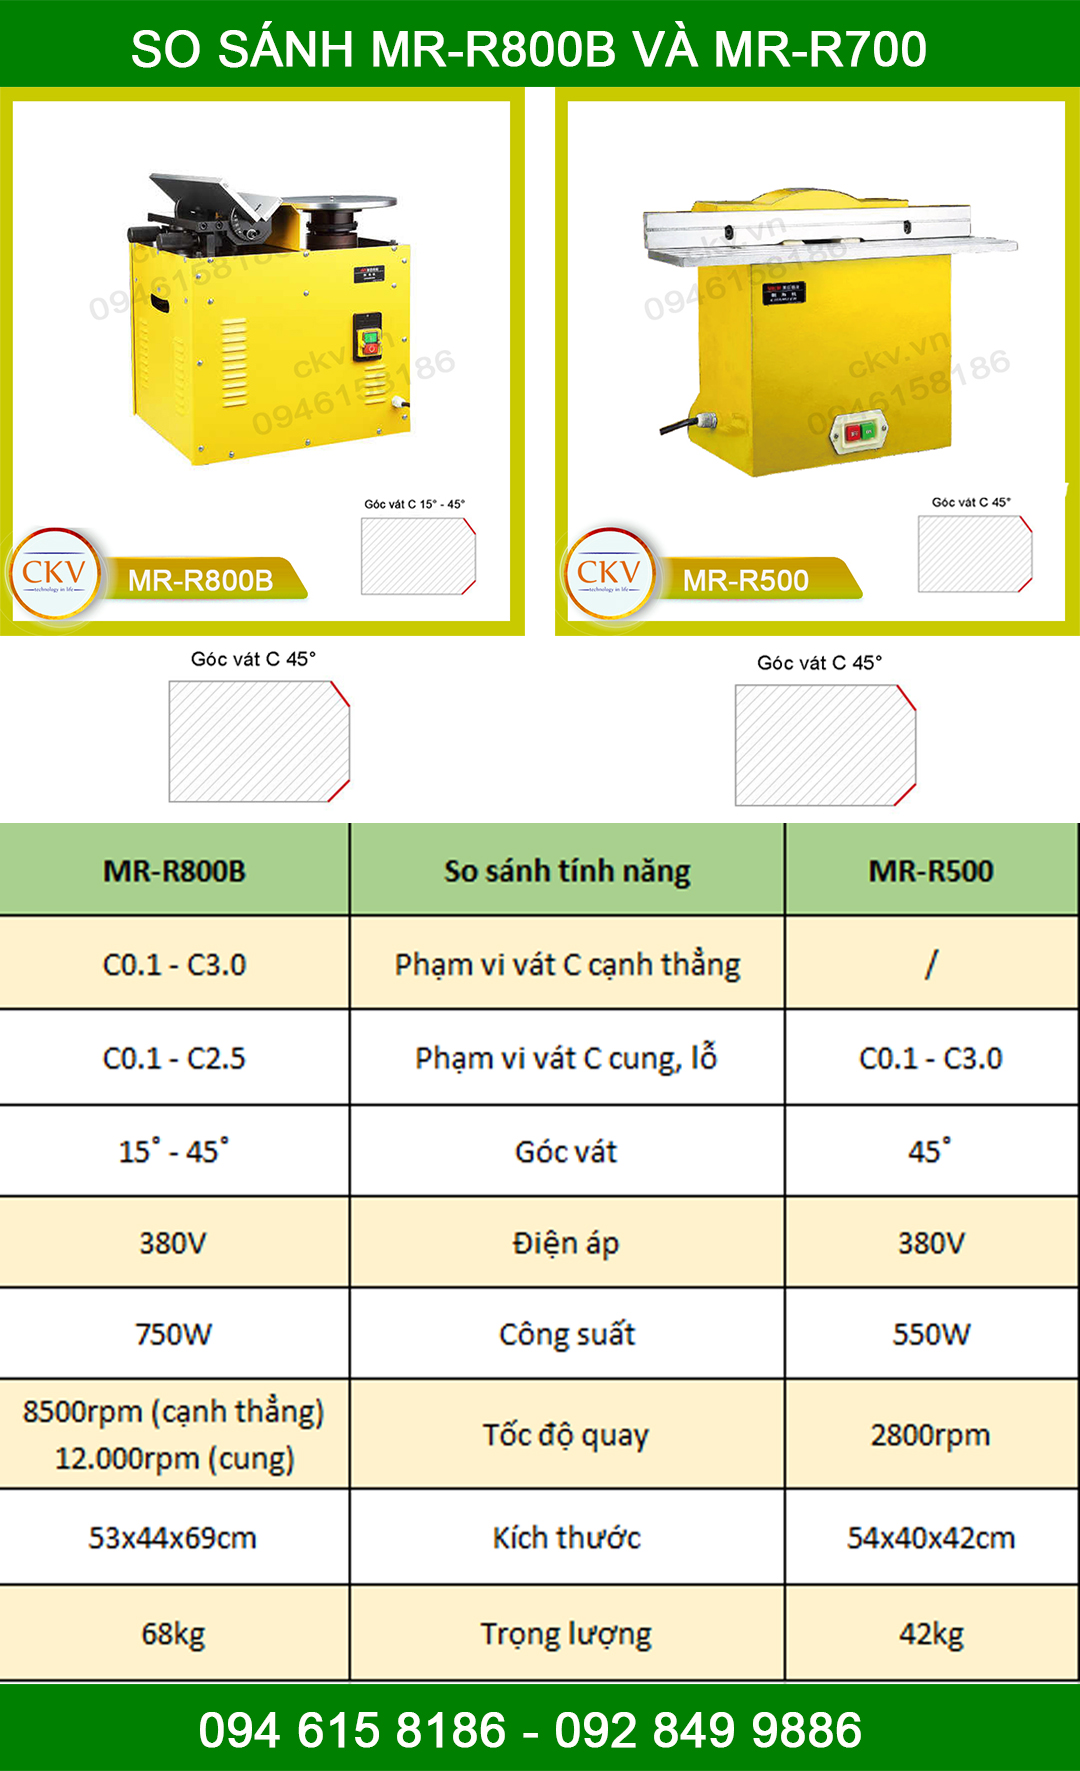 So sánh MR-R500 và MR-R800B